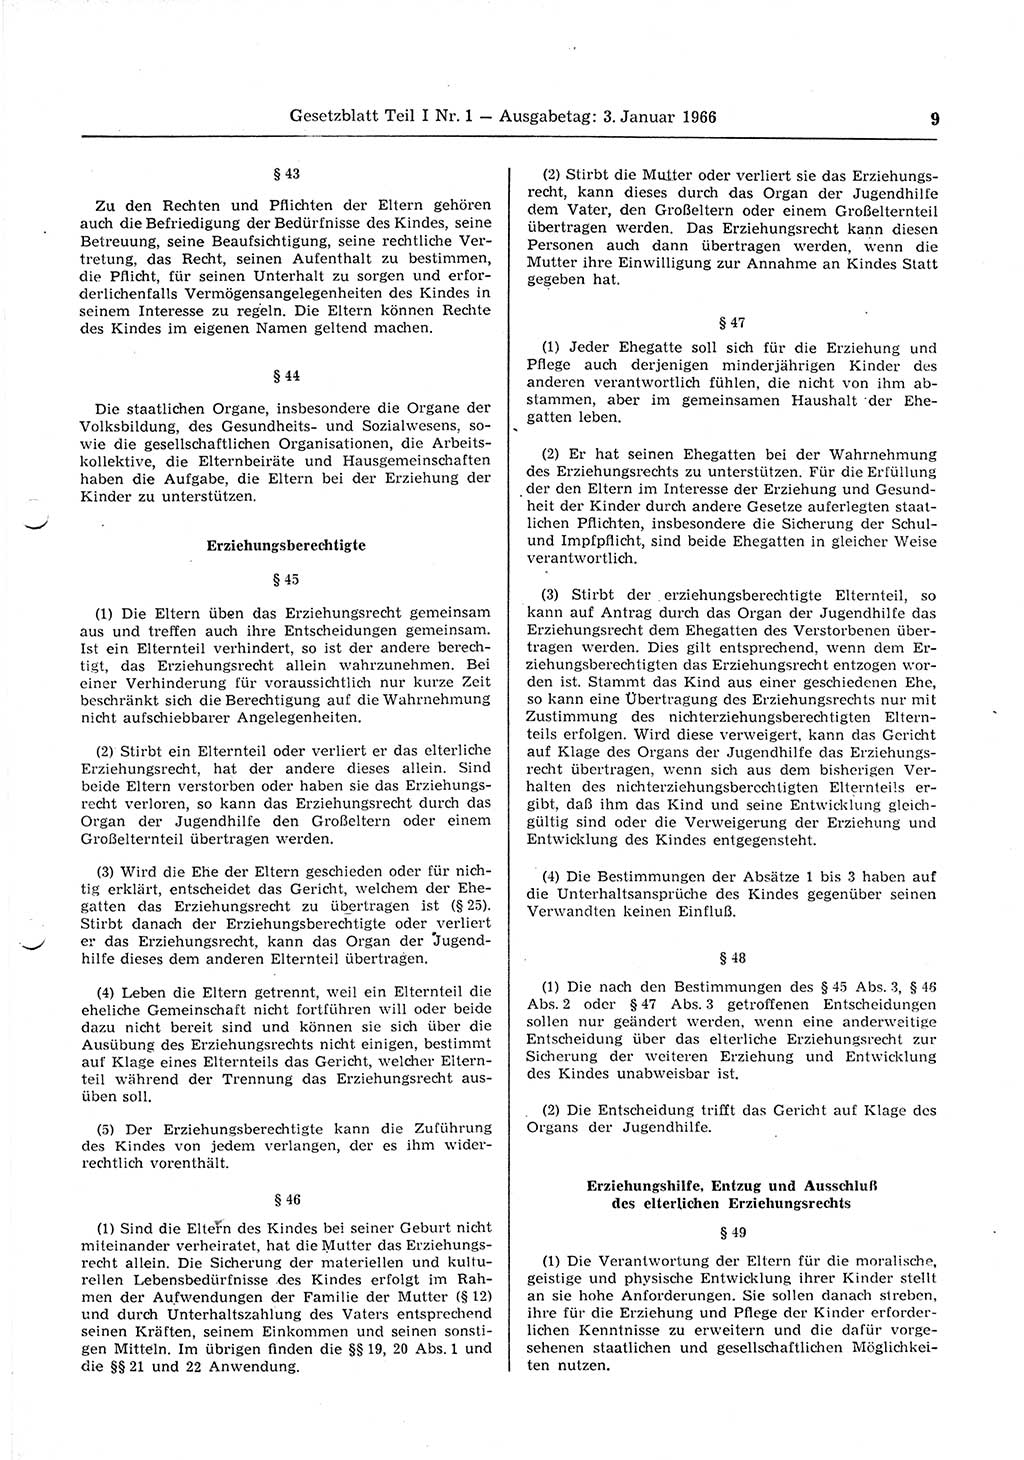 Gesetzblatt (GBl.) der Deutschen Demokratischen Republik (DDR) Teil Ⅰ 1966, Seite 9 (GBl. DDR Ⅰ 1966, S. 9)